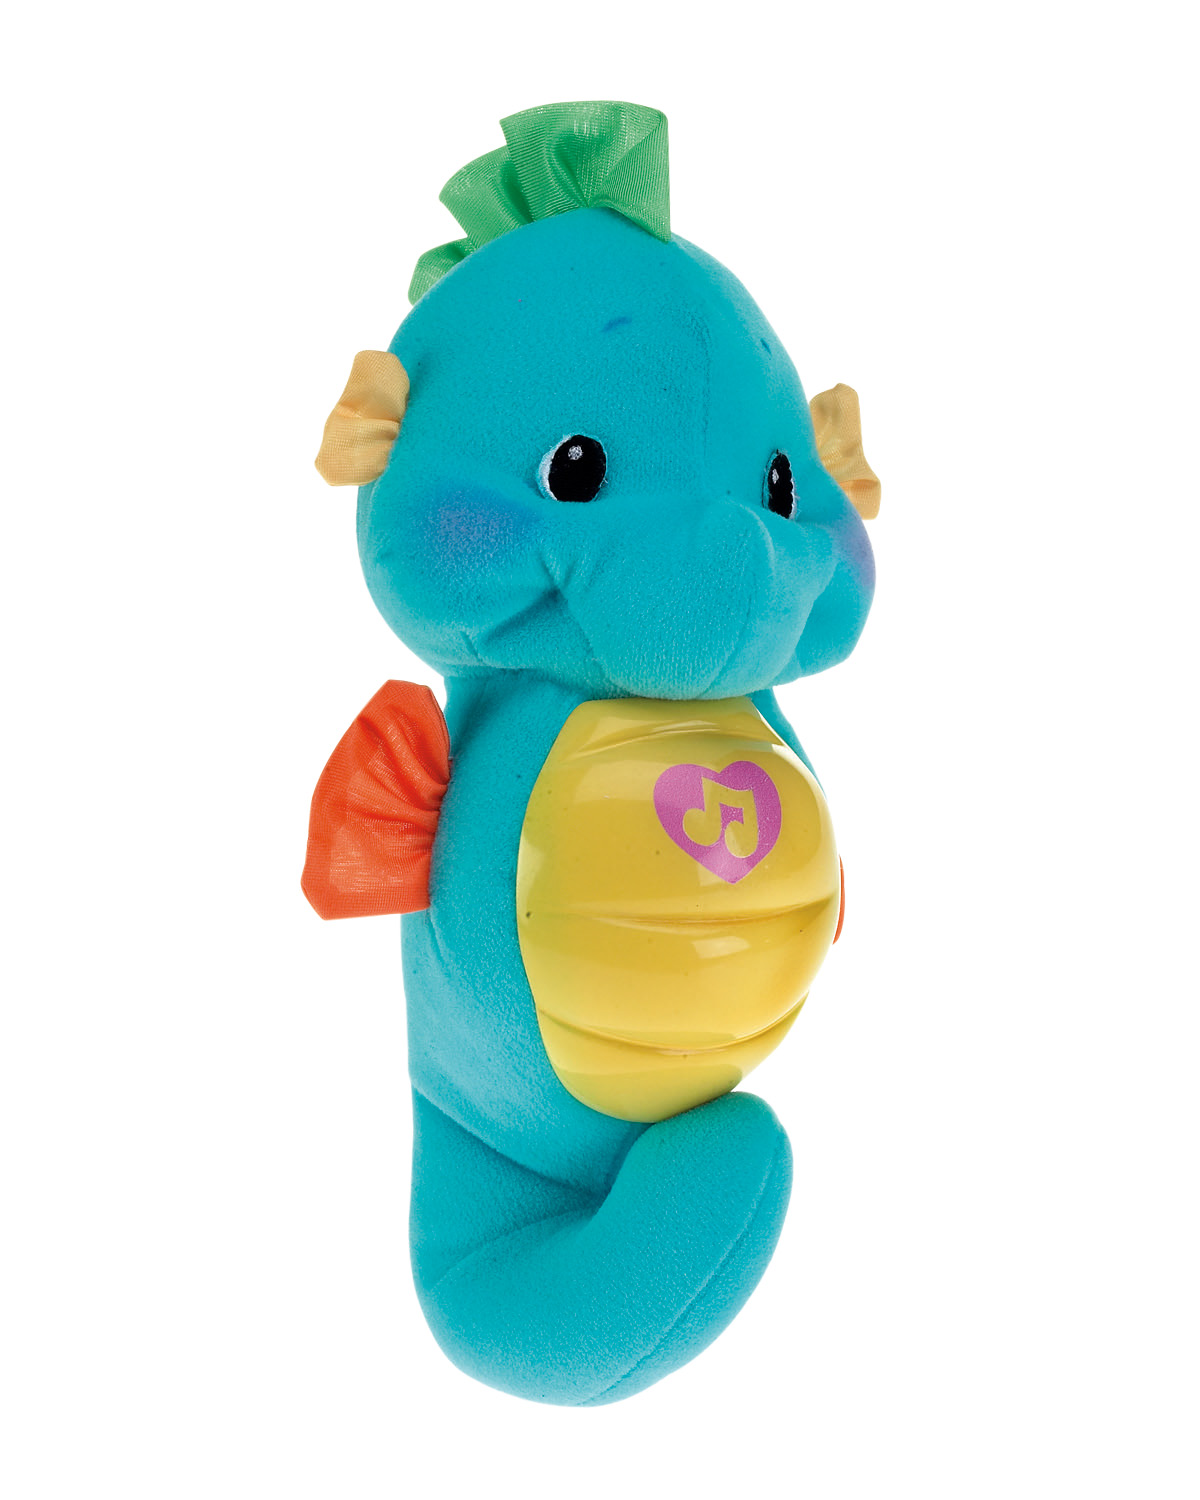 ФП игрушка музыкальная Морской конек раскраска с глиттером мои игрушки